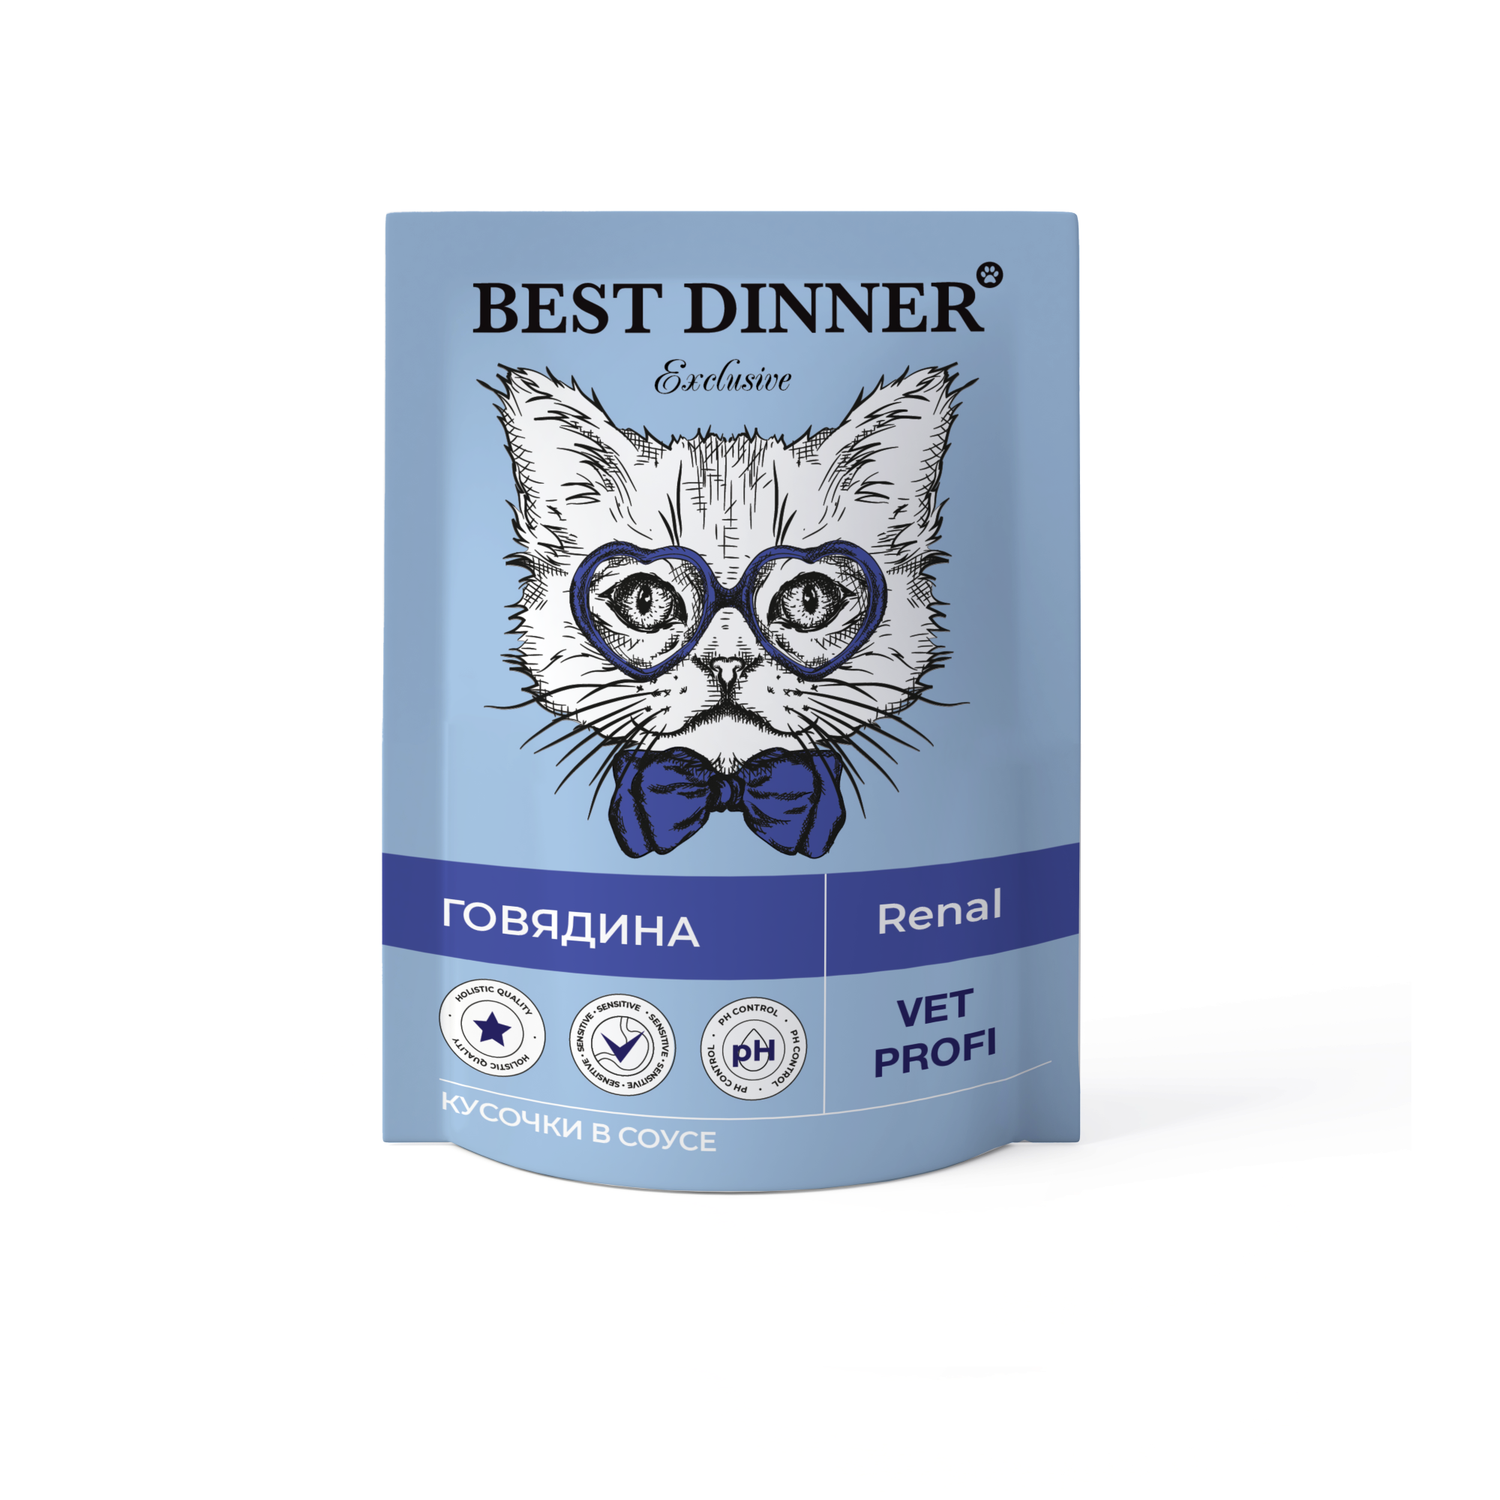 Корм для кошек Best Dinner 85г Exclusive Vet Profi Renal кусочки в соусе с говядиной - фото 1